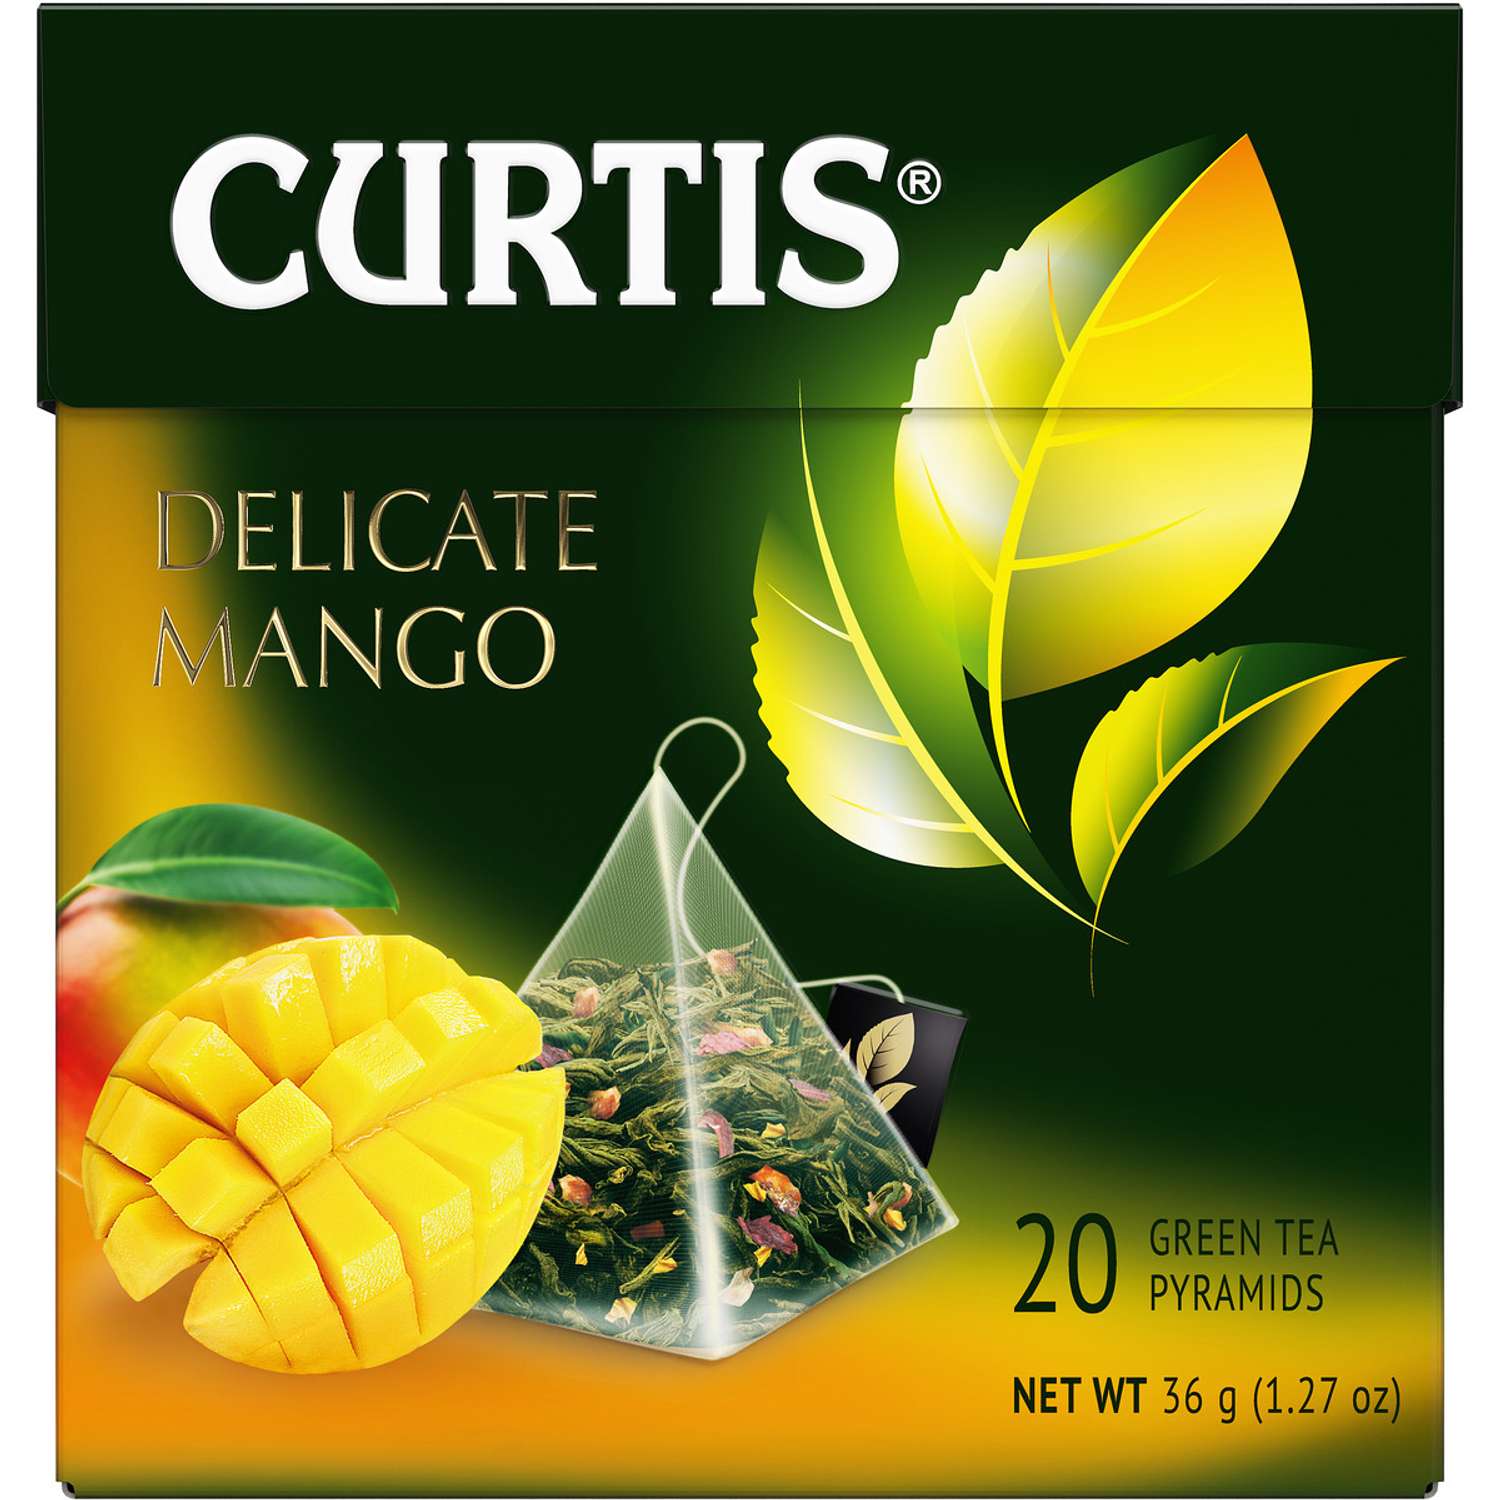 Чай зеленый Curtis Delicate Mango 20 пирамидок с ароматом манго кусочками ананаса и лепестками цветов - фото 1